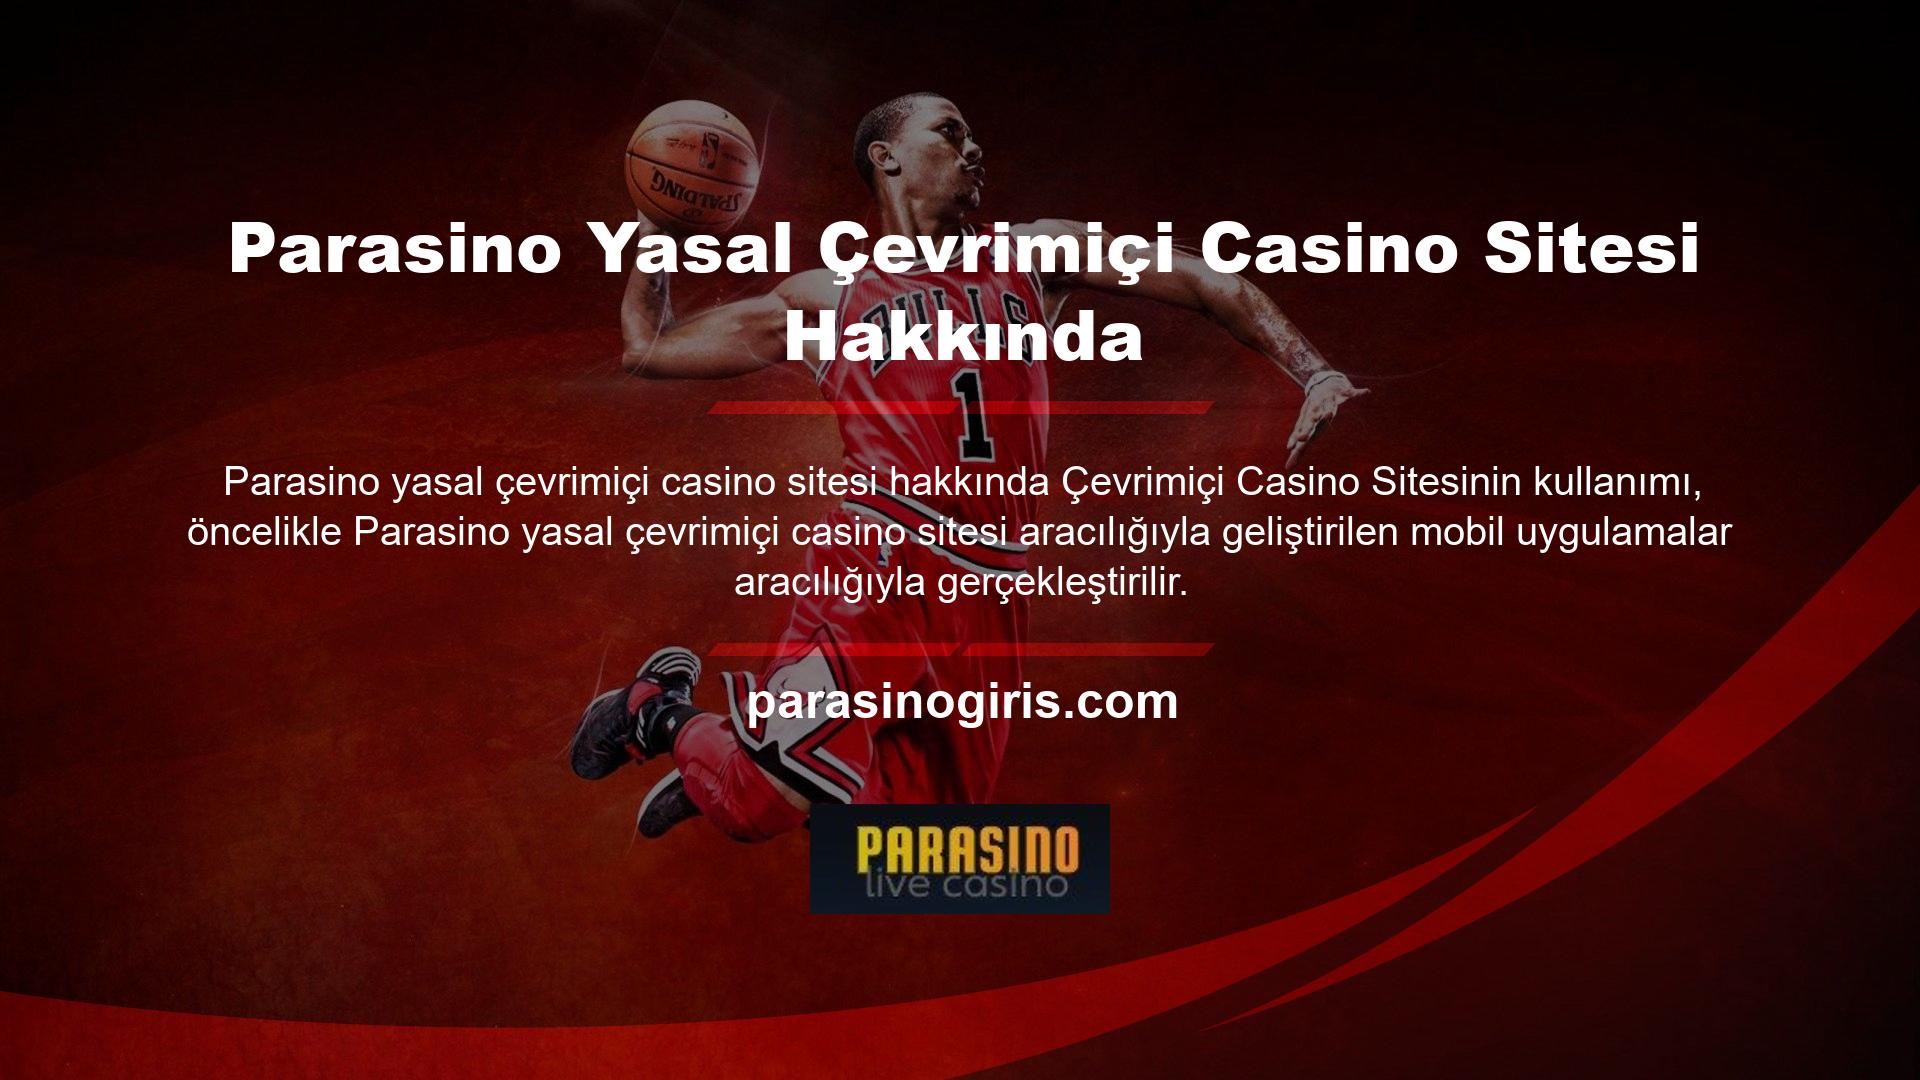 Bu başarıya ulaşan ilk sitelerden biri olan Parasino, oyunlarını mobil casinolara entegre etmek için en uzun zamanı harcayan şirketlerden biridir